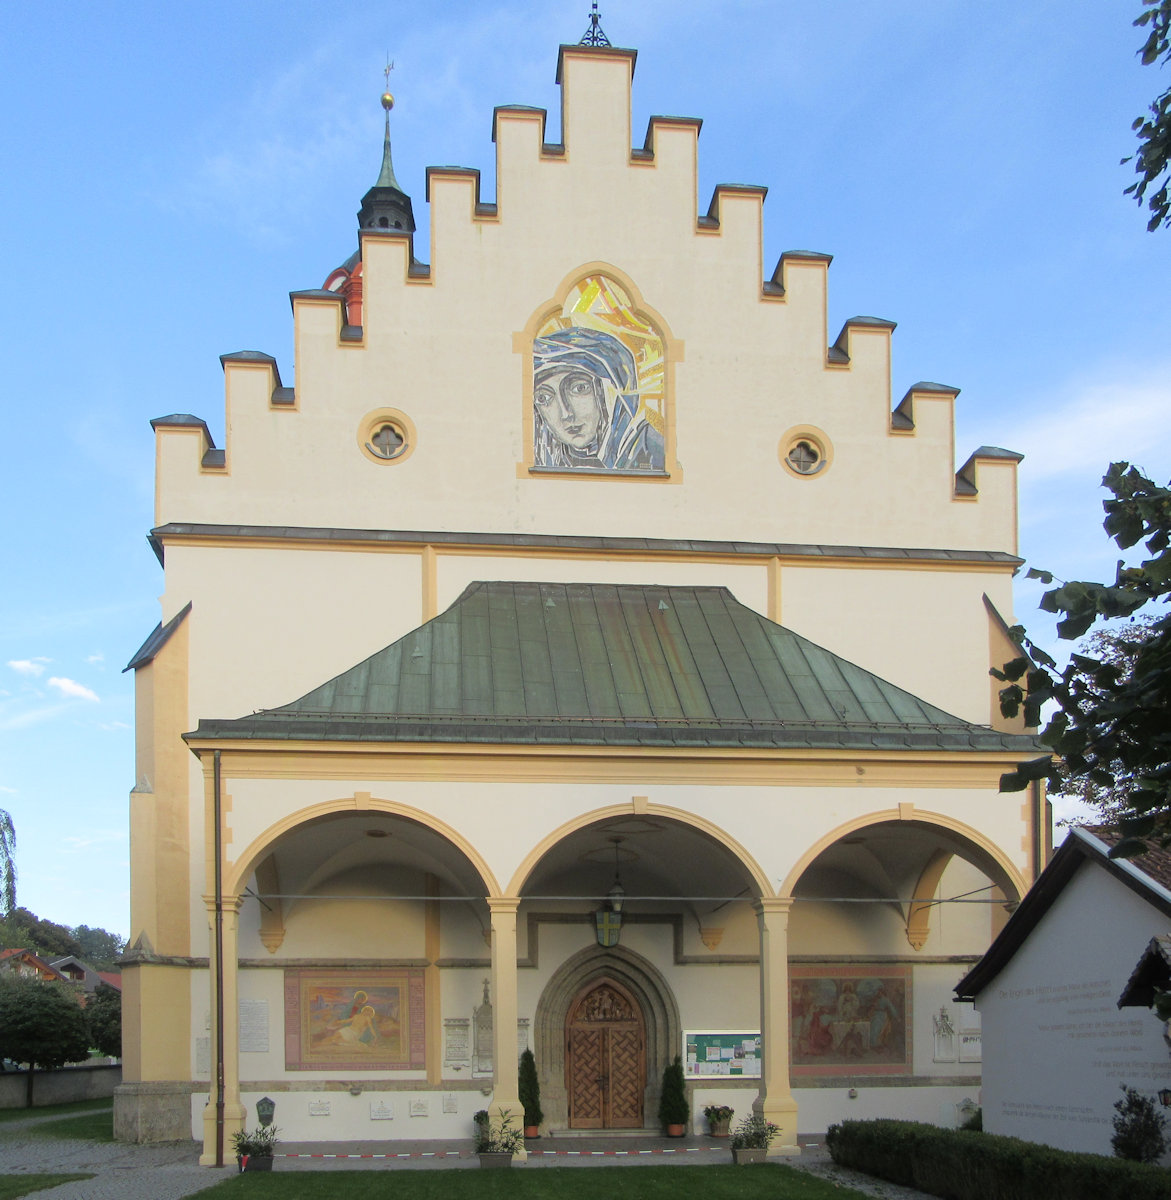 Wallfahrtskirche in Absam mit Nachbildung des Gnadenbildes an der Front